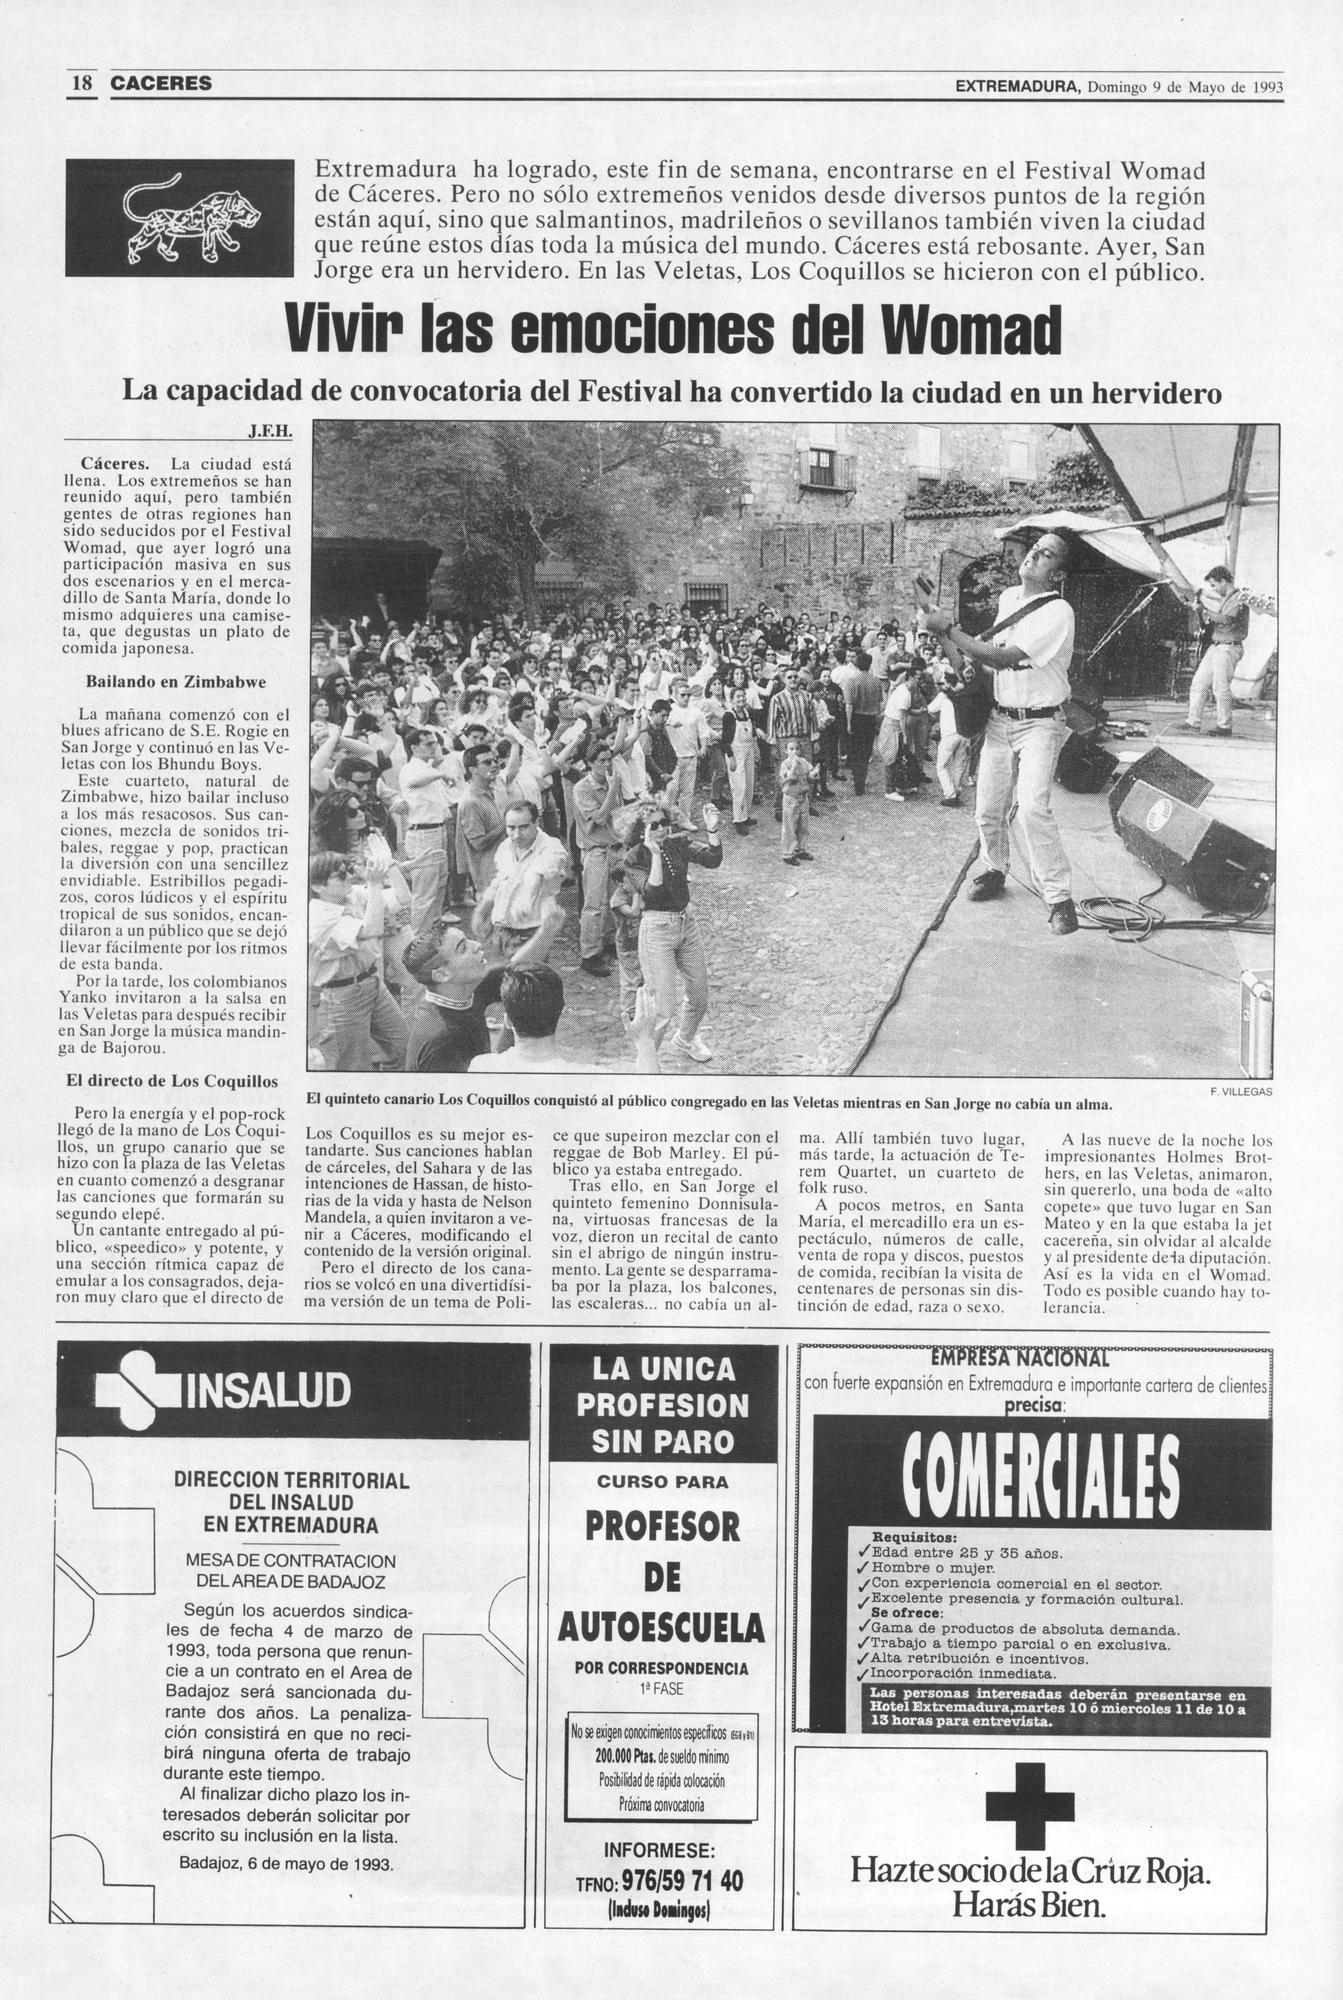 Página de El Periódico Extremadura el 9 de mayo de 1993.